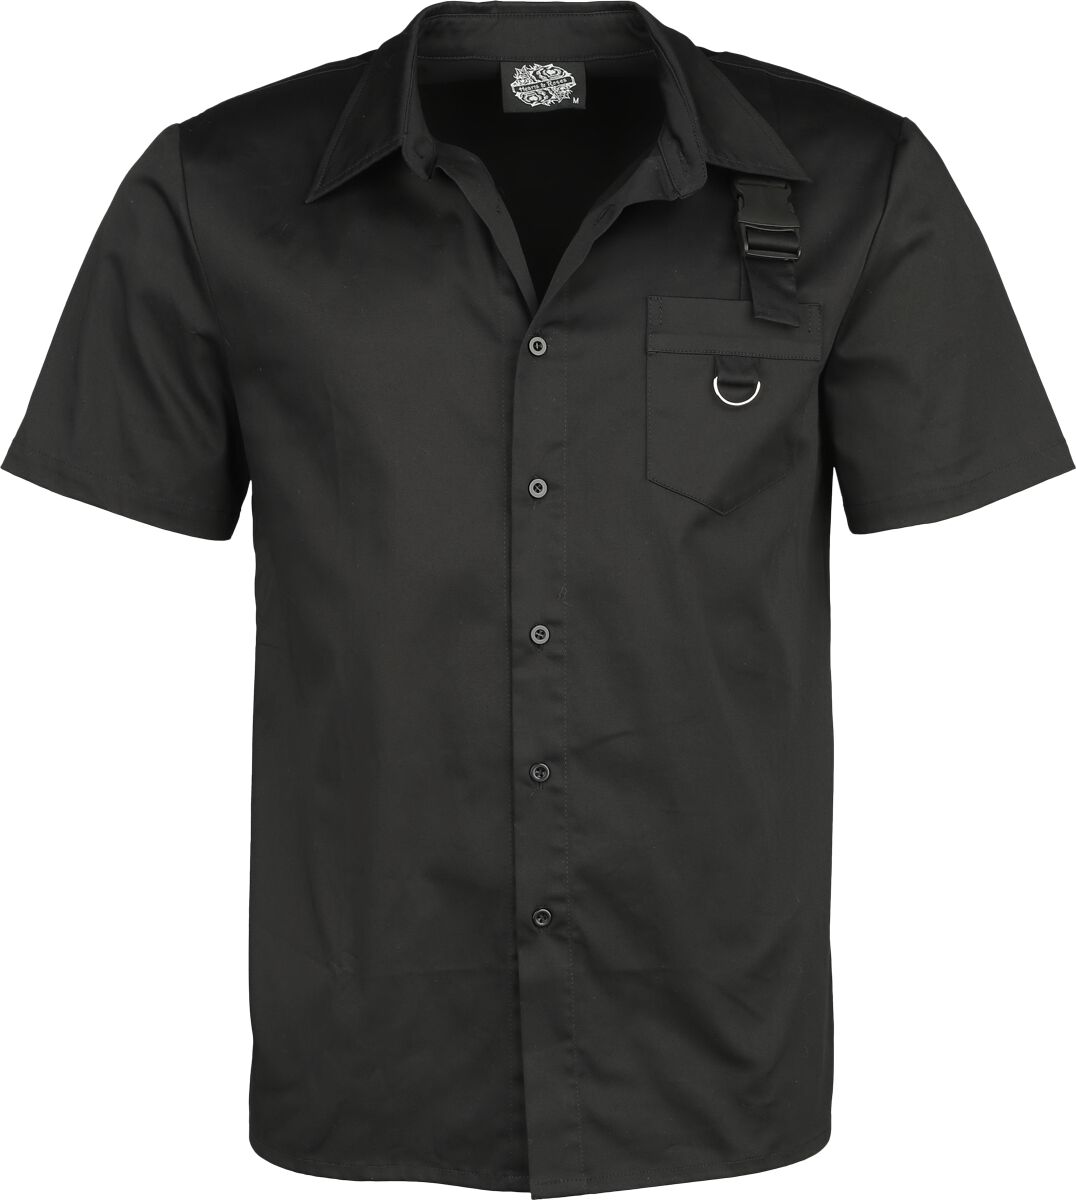 H&R London - Gothic Kurzarmhemd - Black Shirt - S bis 4XL - für Männer - Größe XXL - schwarz